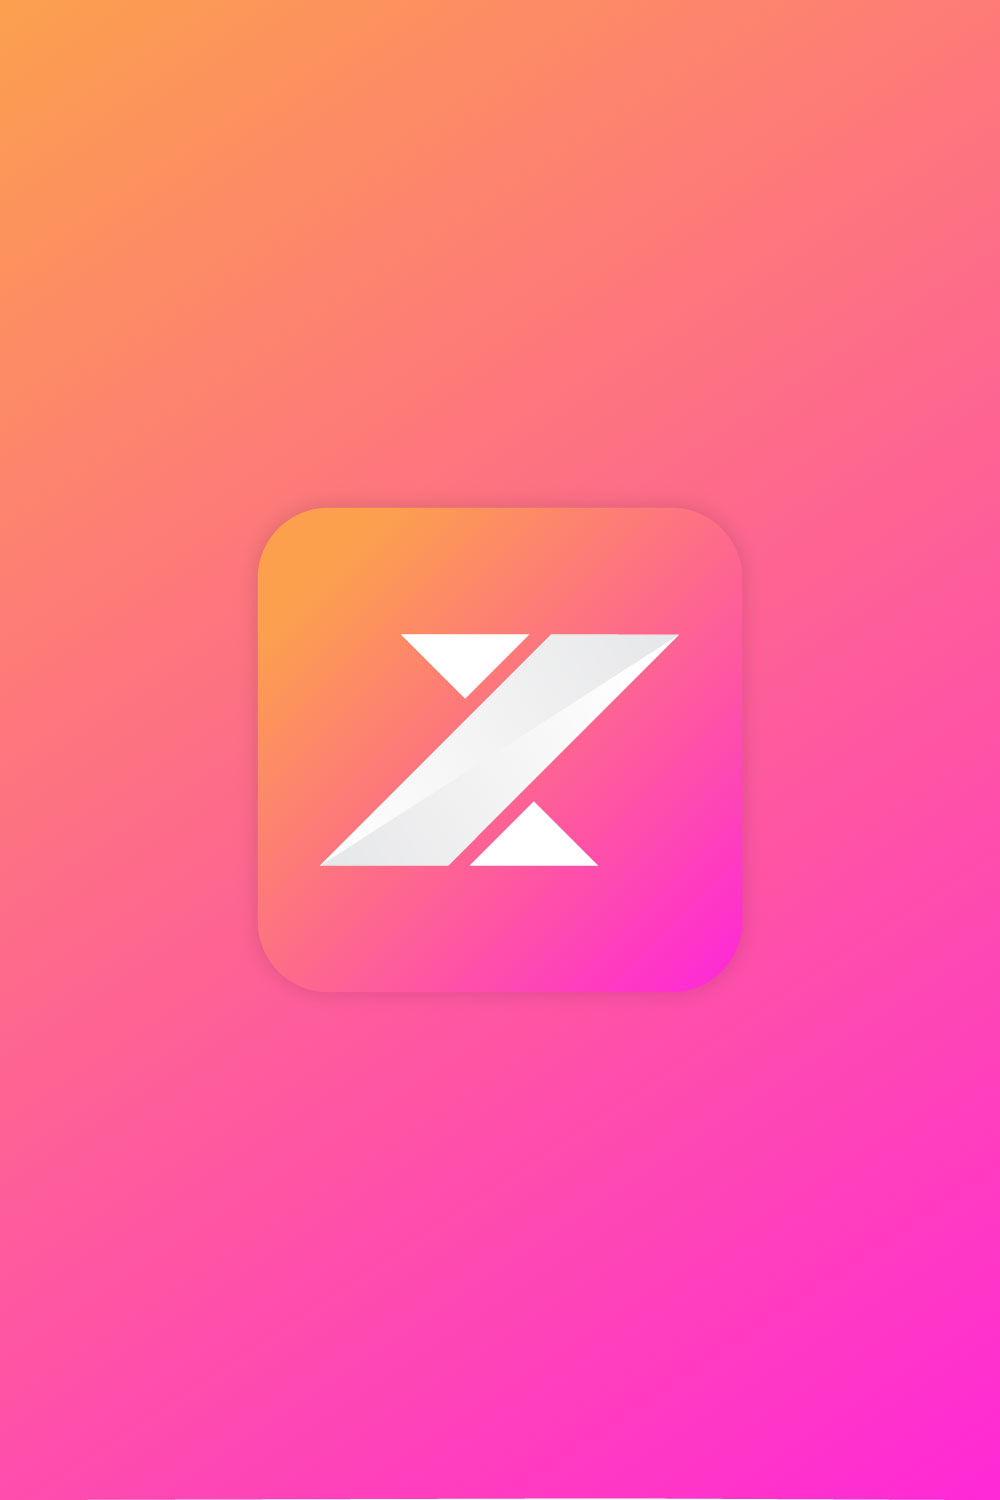 Z Letter - Logo Design template pinterest image.